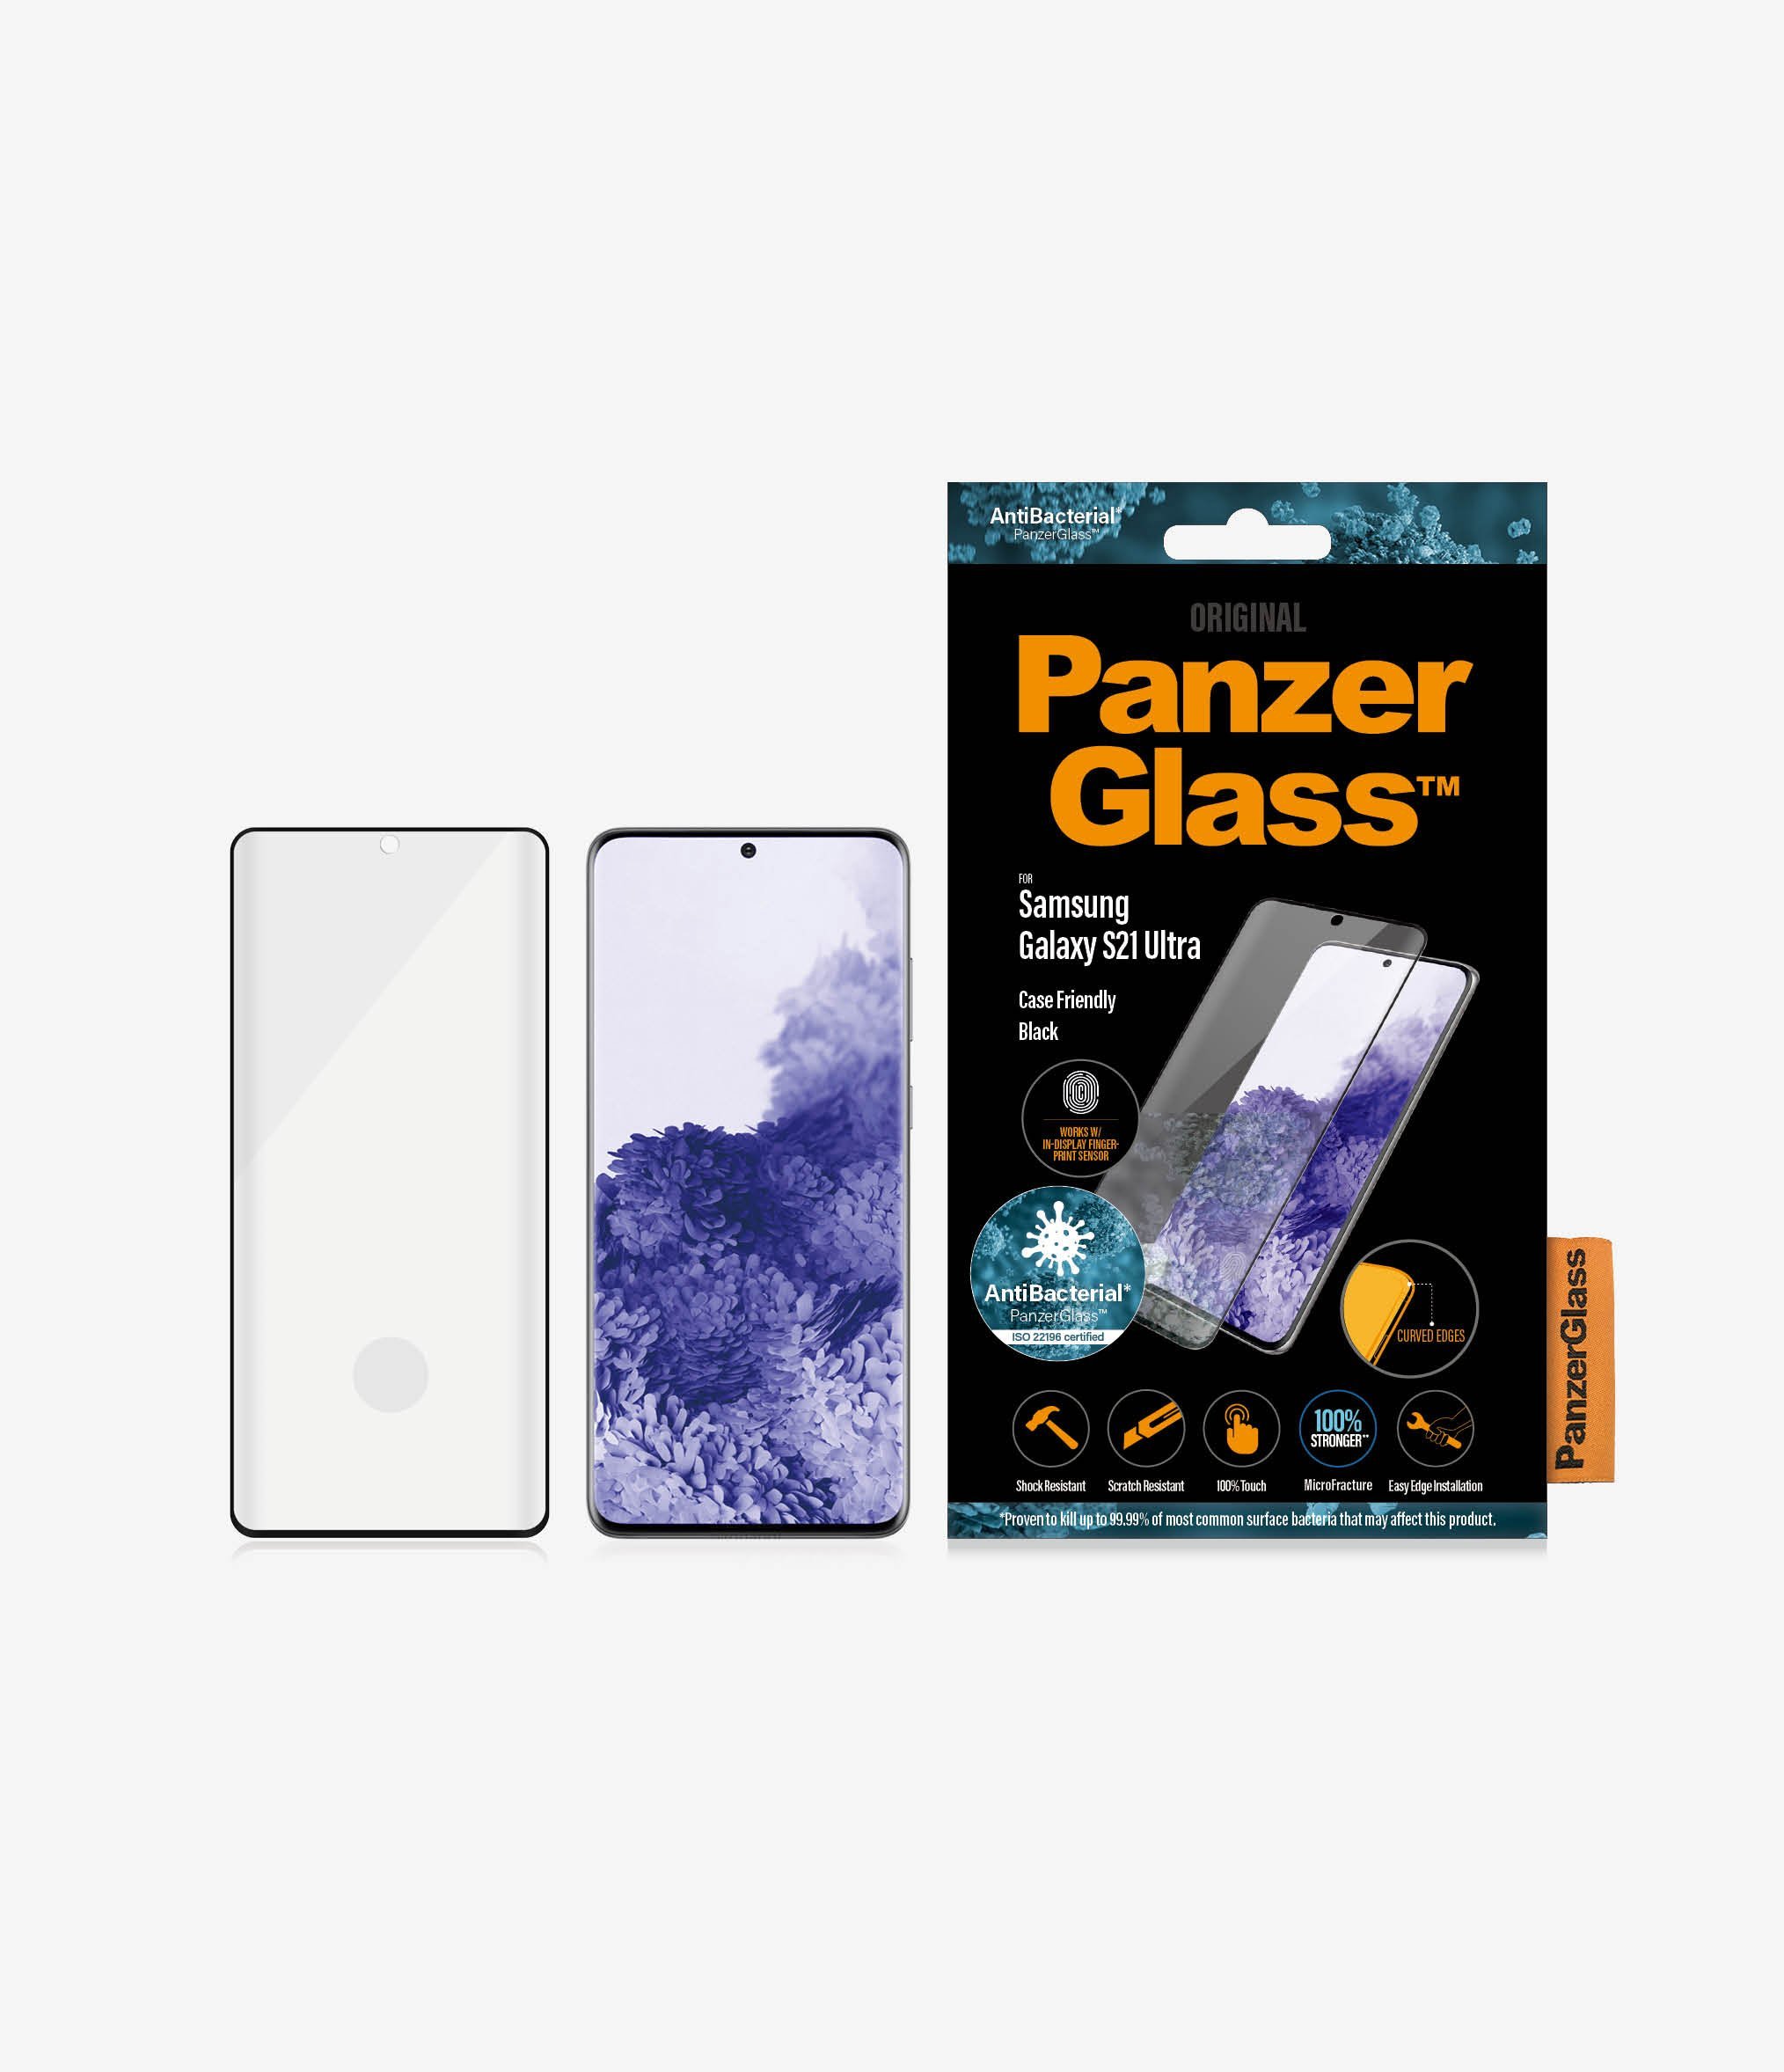 Szkło hartowane PanzerGlass E2E Microfracture do Samsung S21 Ultra G998 Case Friendly Finger Print AntiBacterial czarny/black widok od przodu na szkło telefon i opakowanie